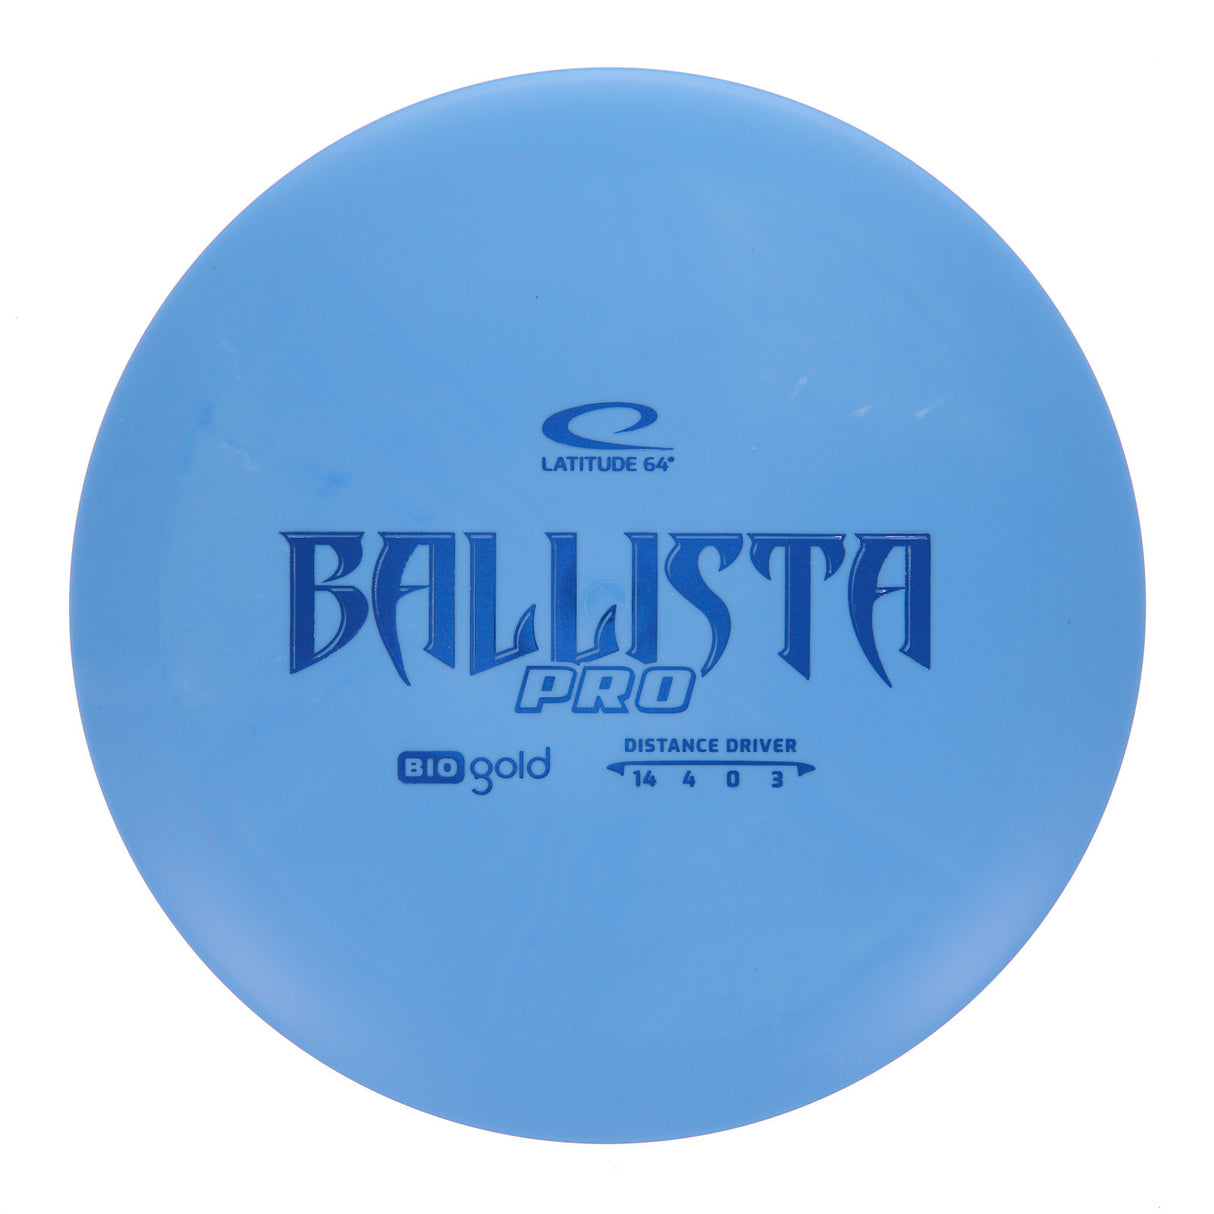 Latitude 64 Ballista Pro - Bio Gold 175g | Style 0006